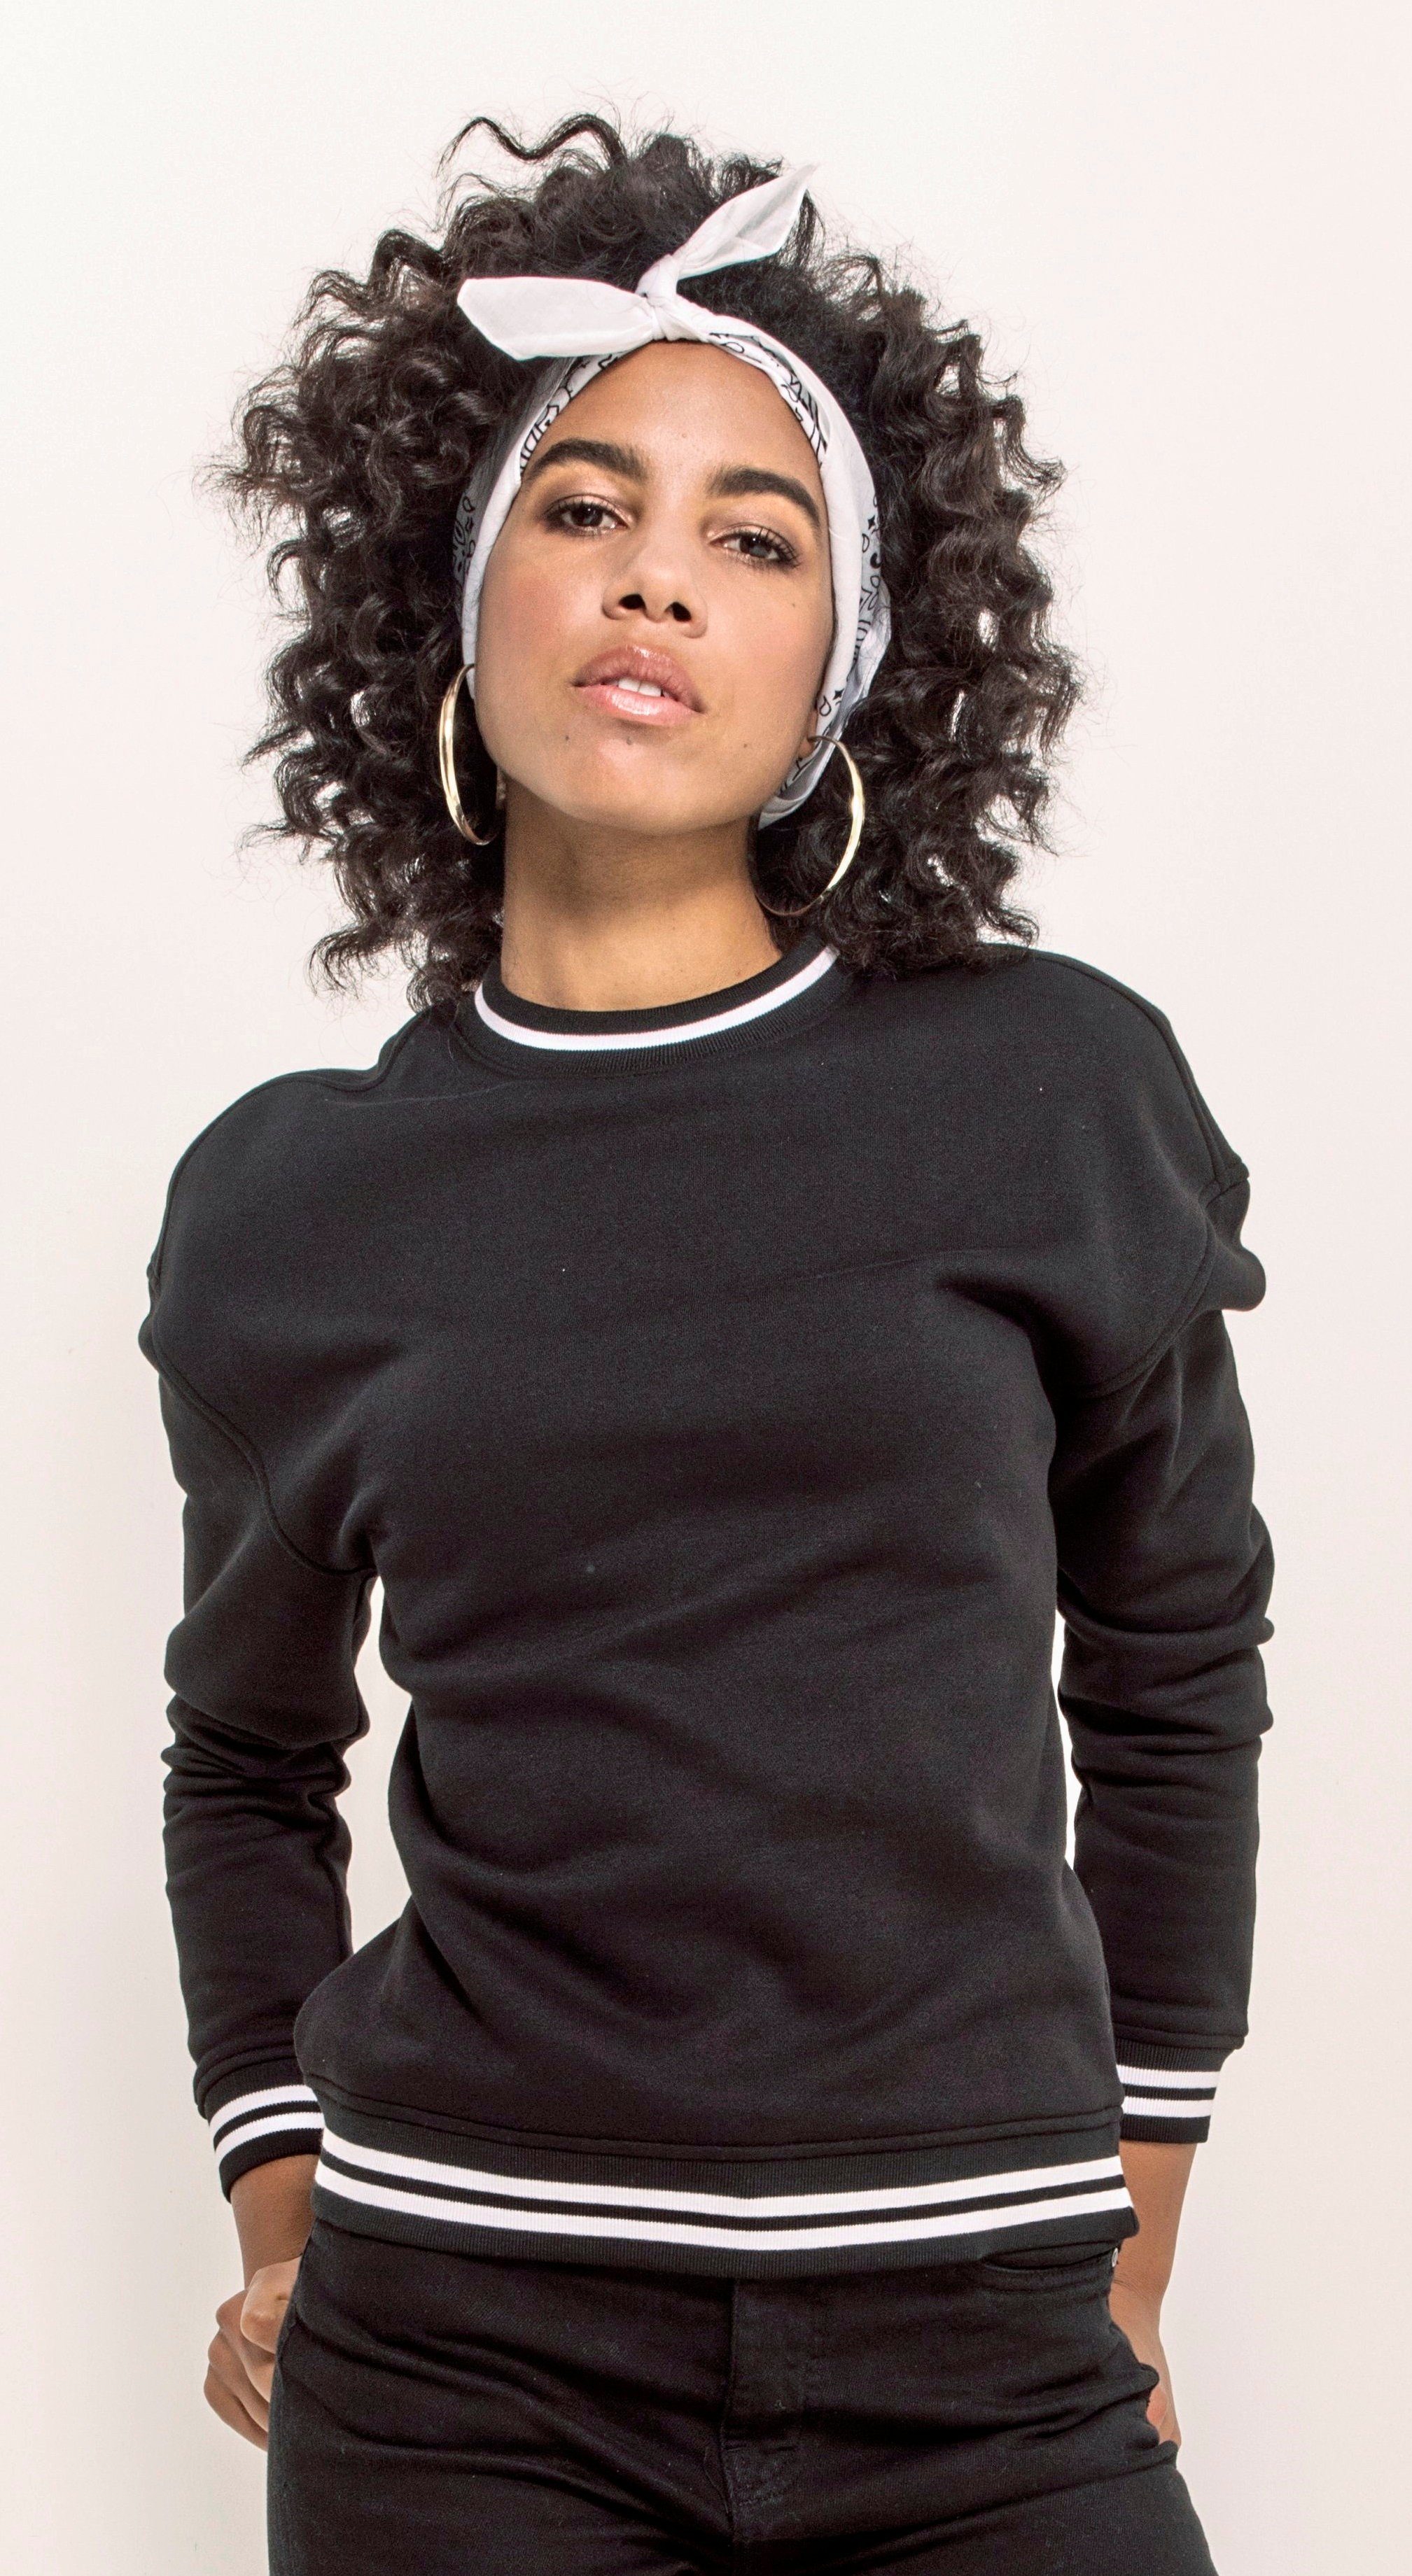 Brand bis schwarz Crewneck Sweater Mädchen / Build in XS Optik Sweatshirt Your 5XL College Damen